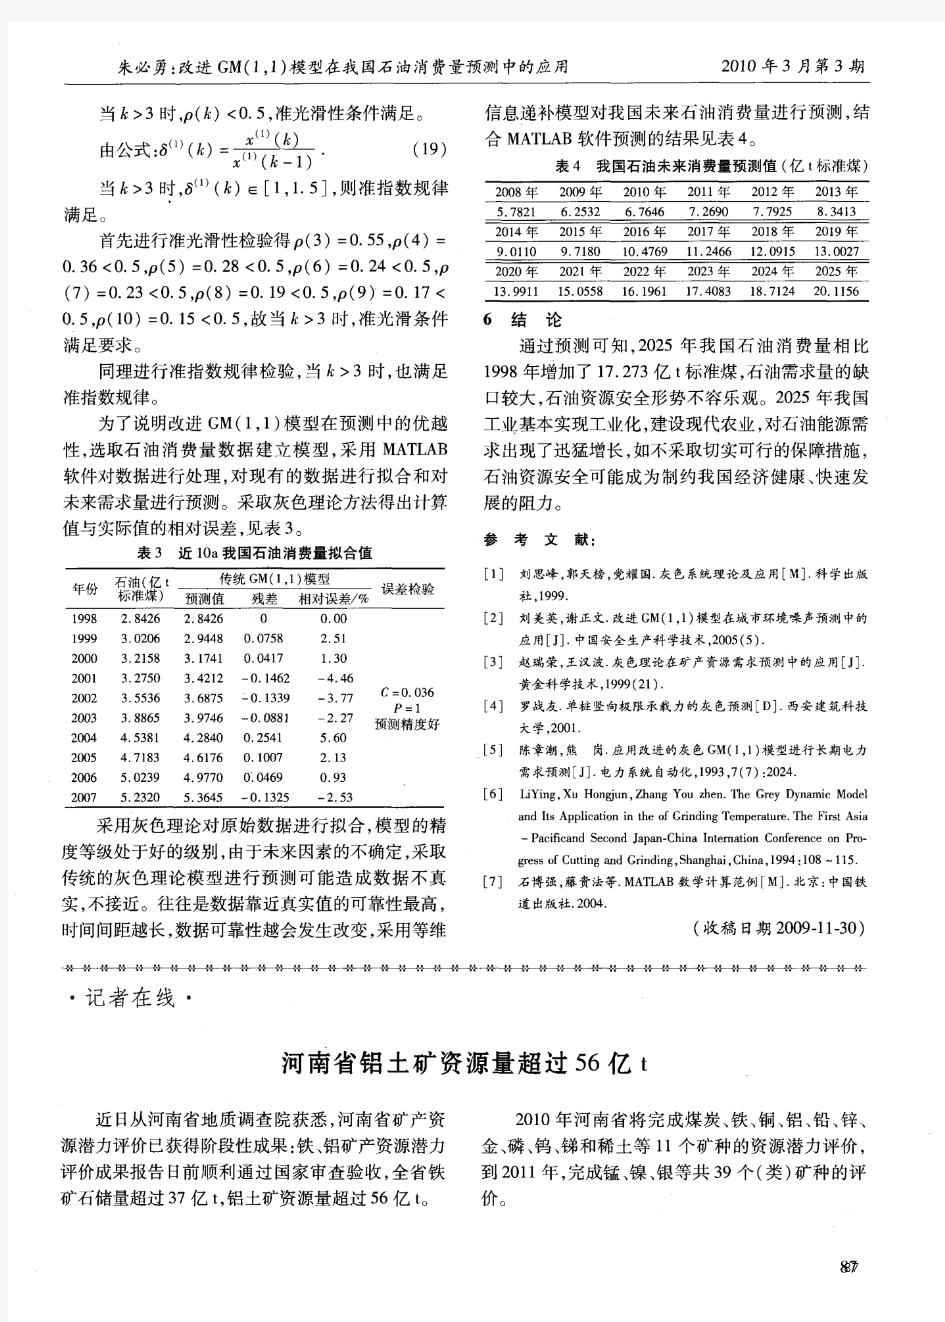 河南省铝土矿资源量超过56亿t